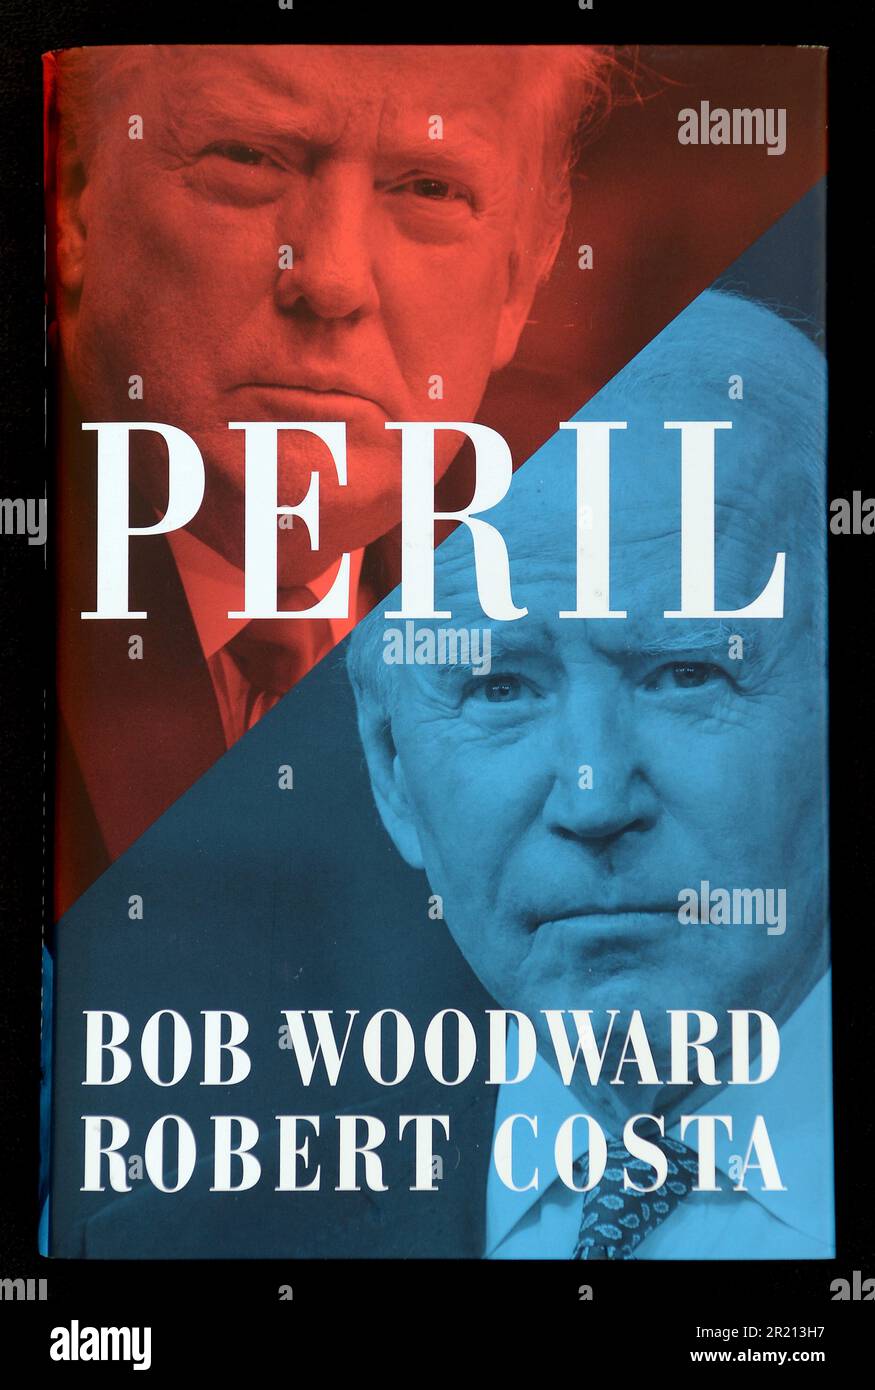 Pericolo, paura: Trump alla Casa Bianca, e Rage, tre libri del giornalista americano Bob Woodward sulla presidenza di Donald Trump. Peril, scritto da Woodward con Robert Costa, fu pubblicato il 21 settembre 2021, mentre Fear fu pubblicato il 11 settembre 2018 e Rage fu pubblicato il 15 settembre 2020. Foto Stock